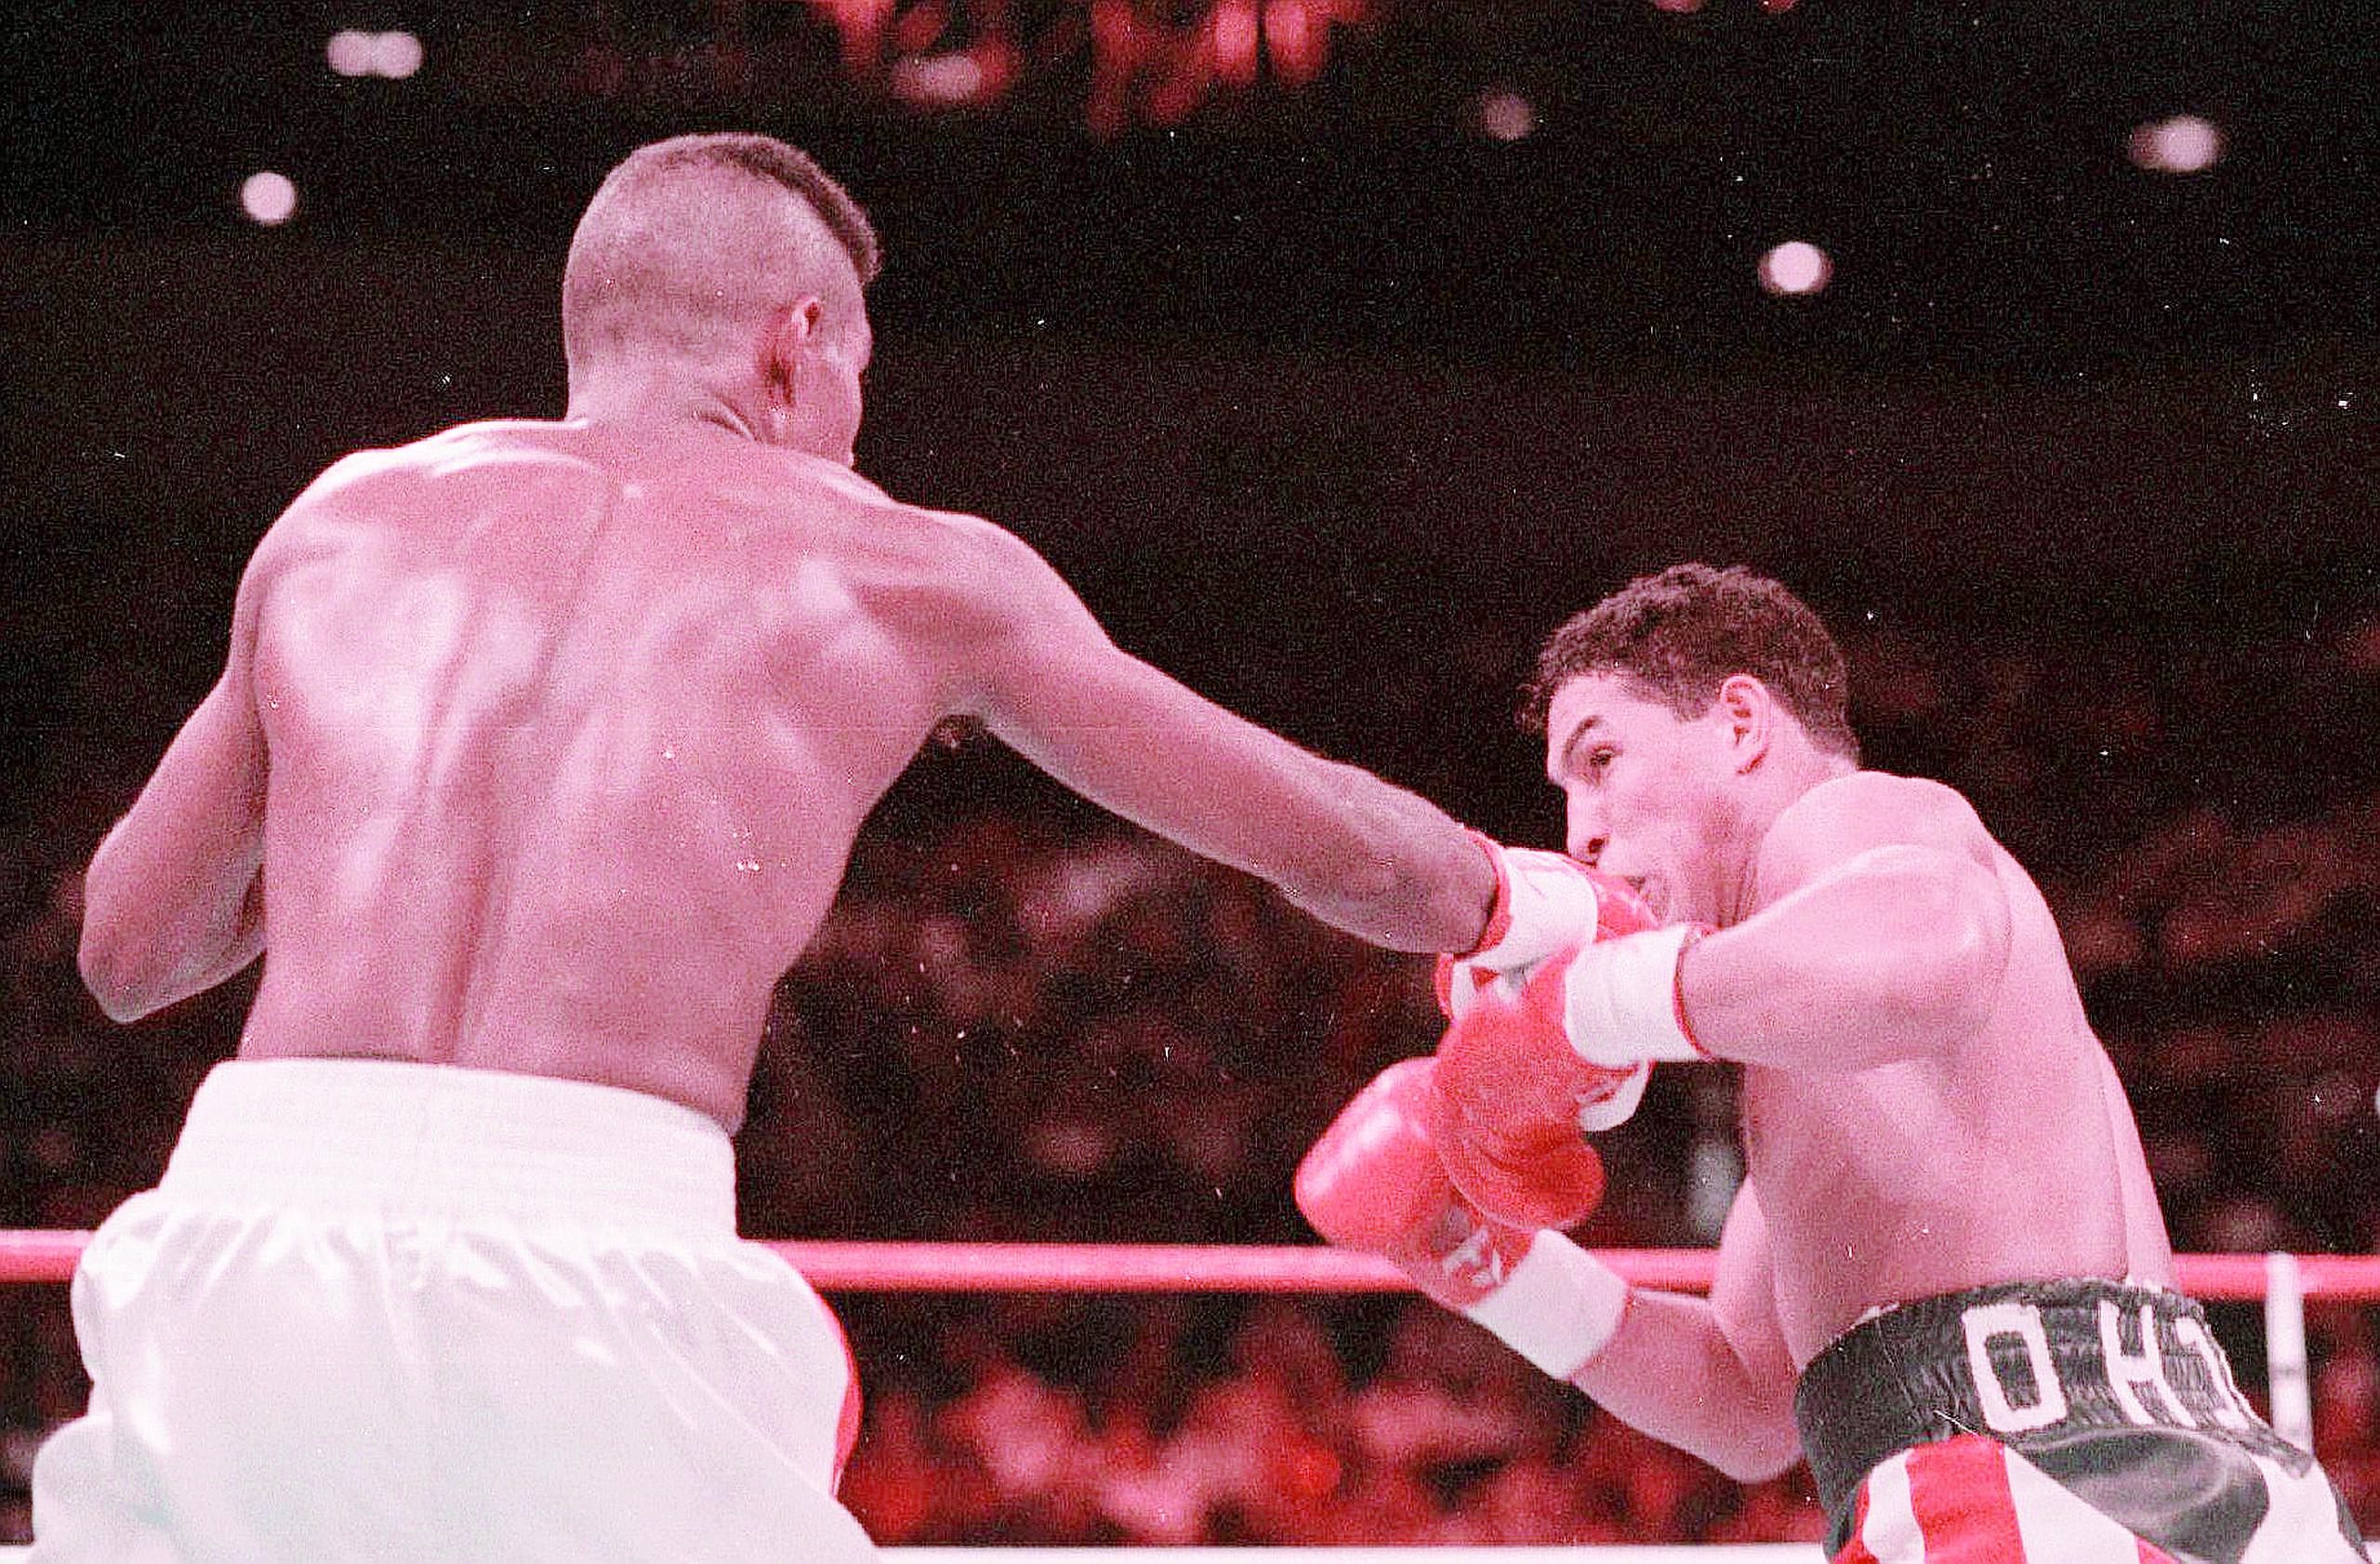 Félix 'Tito' Trinidad retuvo la faja de la Federación Internacional de Boxeo (FIB) con una decisión unánime sobre Héctor Camacho en 1994.